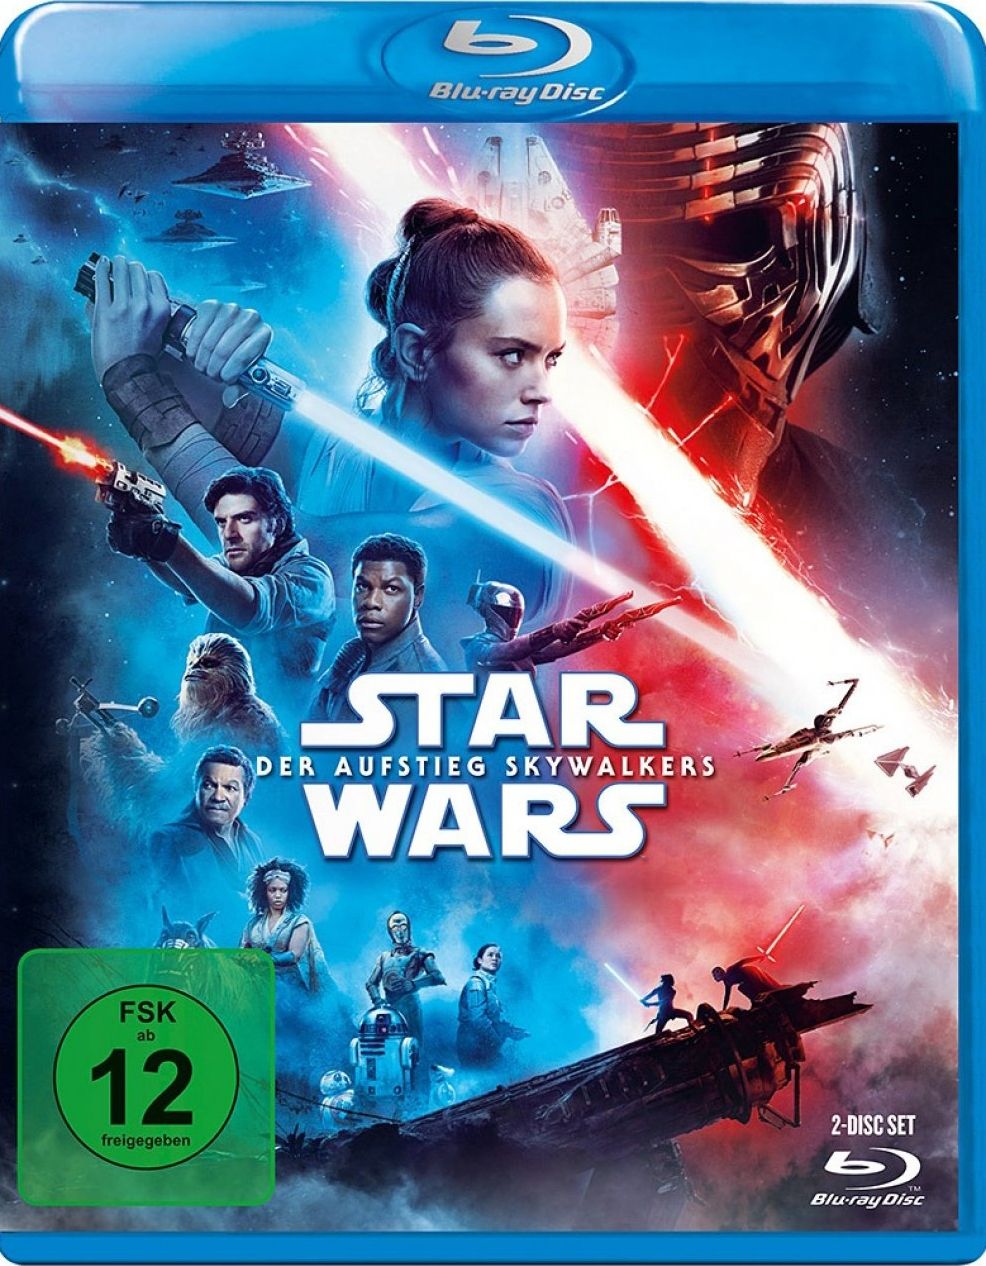 Star Wars: Episode IX - Der Aufstieg Skywalkers (2 Discs) (BLURAY)